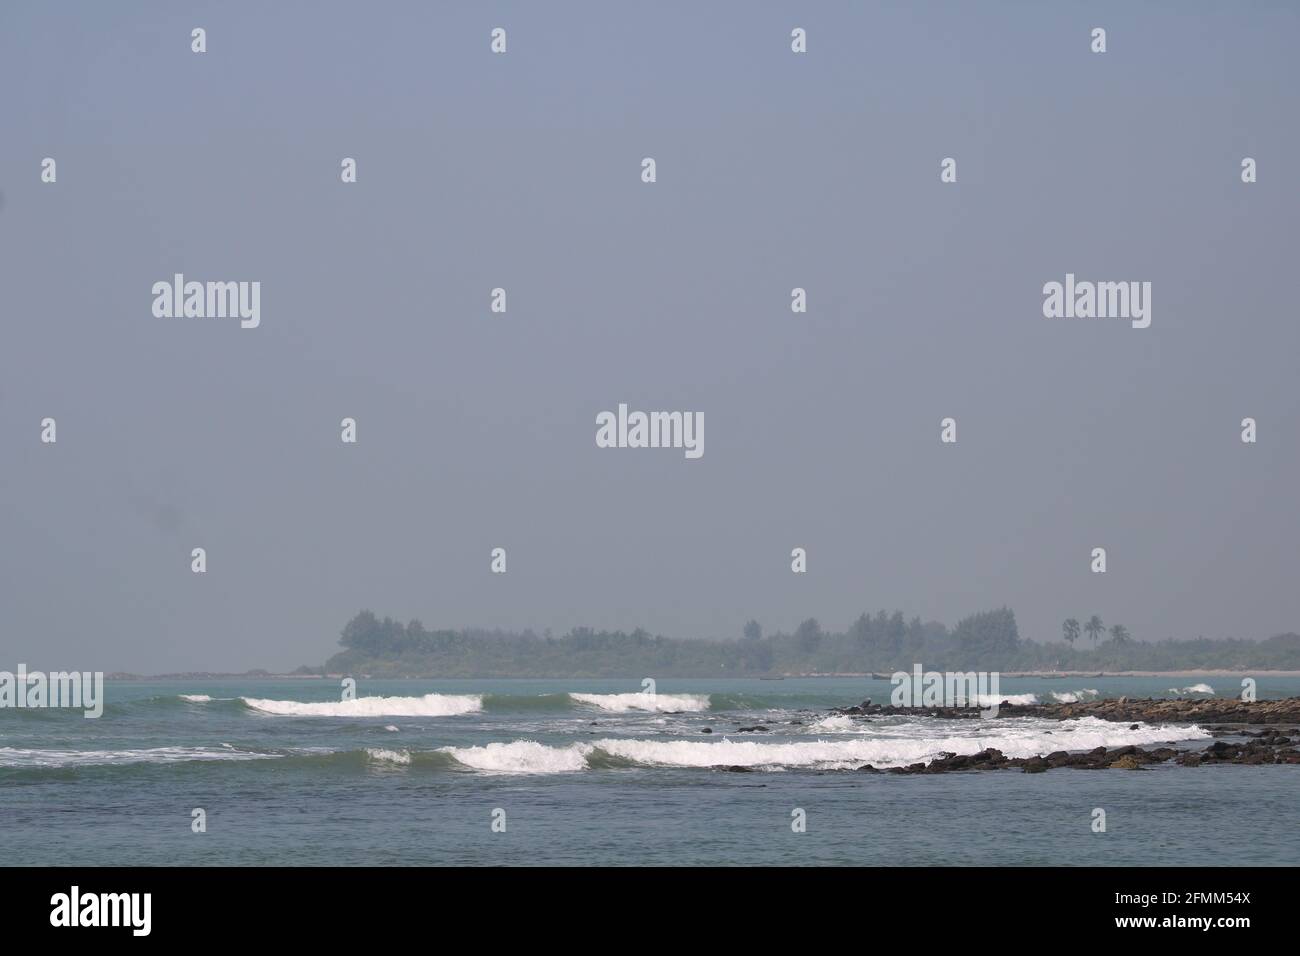 Die wunderschöne Landschaft der insel saint martin von Bangladesh Riff Landschaft Meer Strand Landschaft Stockfoto